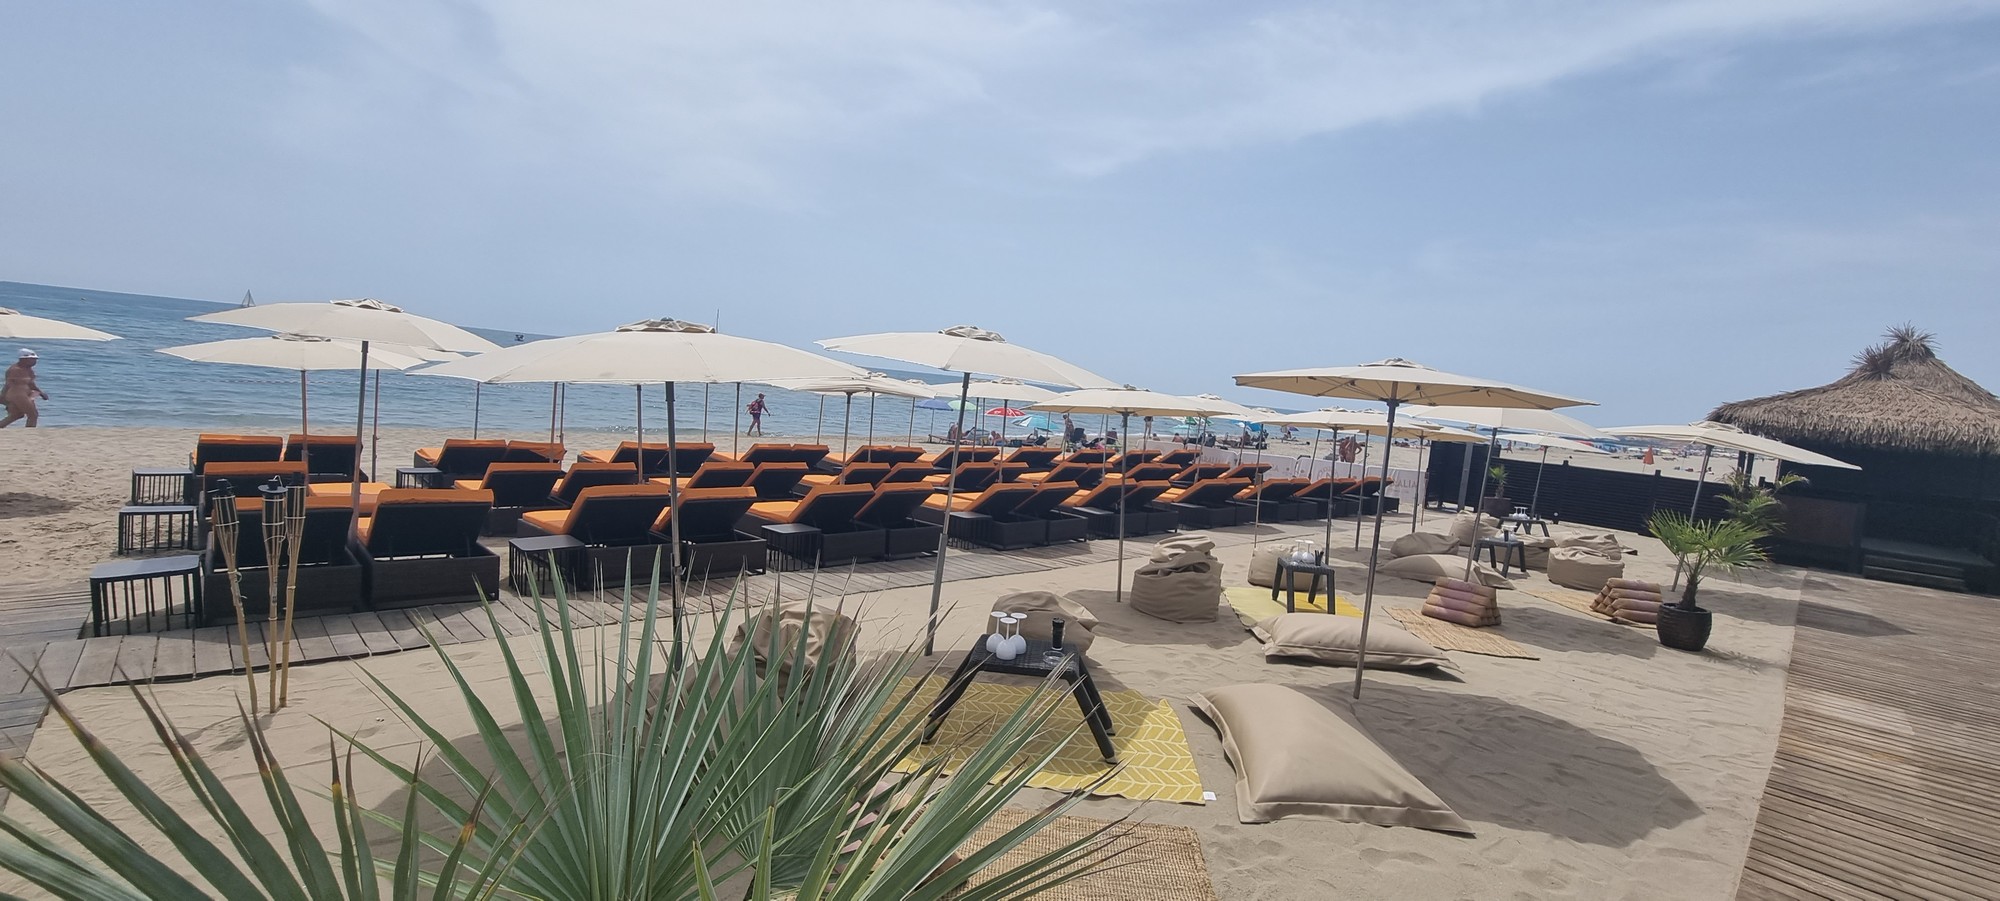 Le Paralia Beach Club est une plage privée aux abords du Sun Beach au Cap dAgde